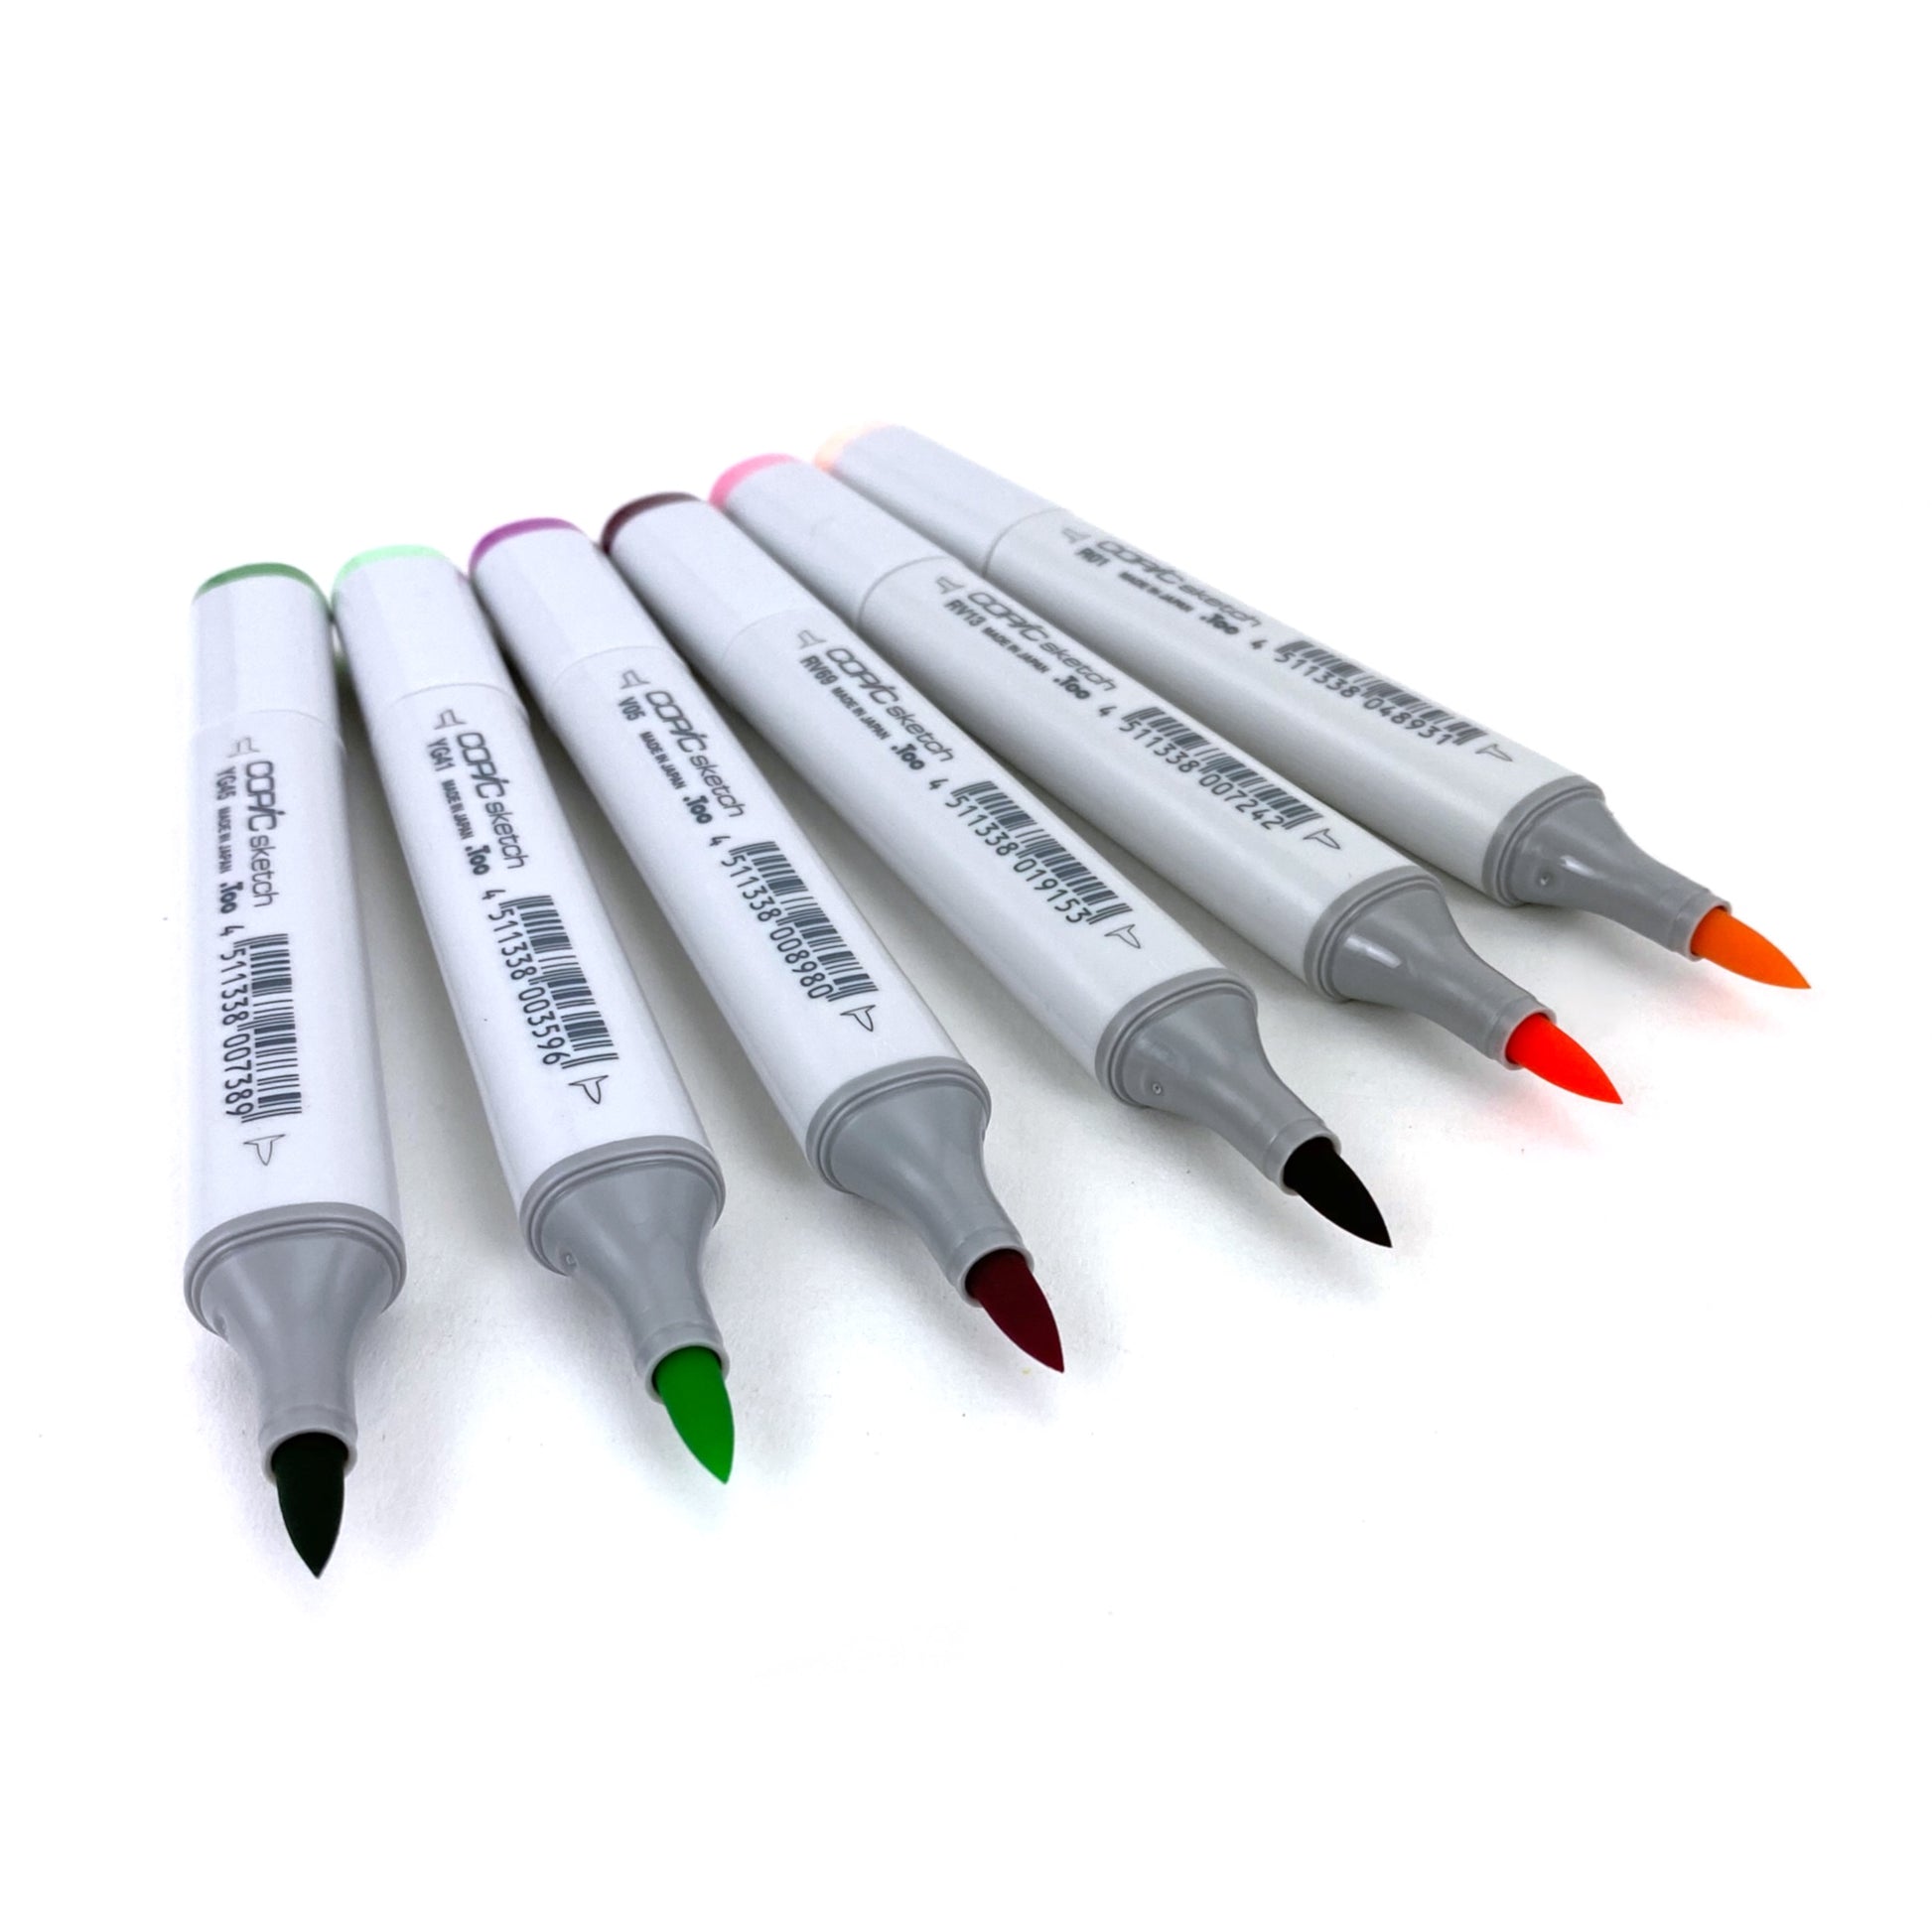 Too Copic JAPAN Multiliner 4 color Pens set Sketch Pen Marker